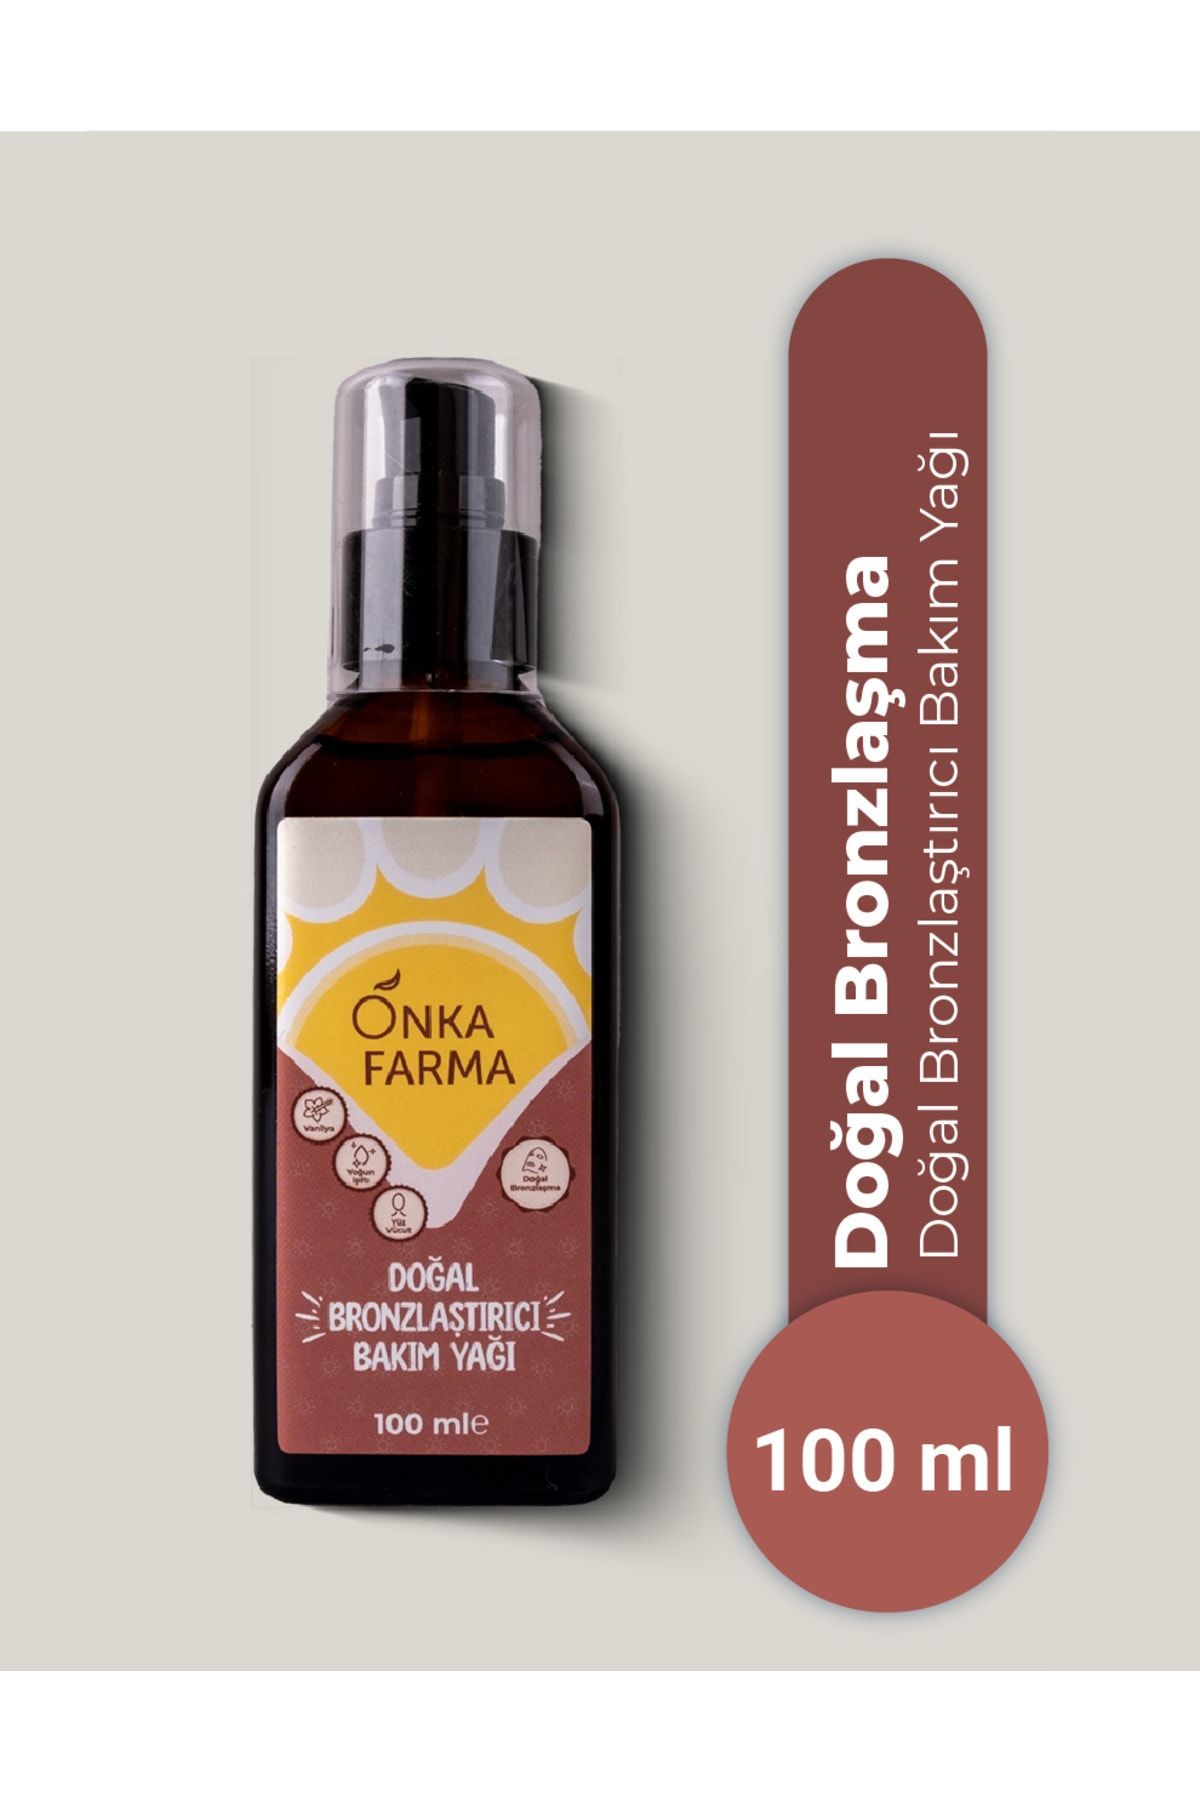 OnkaFarma Onka Farma Doğal Bronzlaştırıcı Bakım Yağı 100 Ml Vanilya Yağlı %100 Doğal Içerik